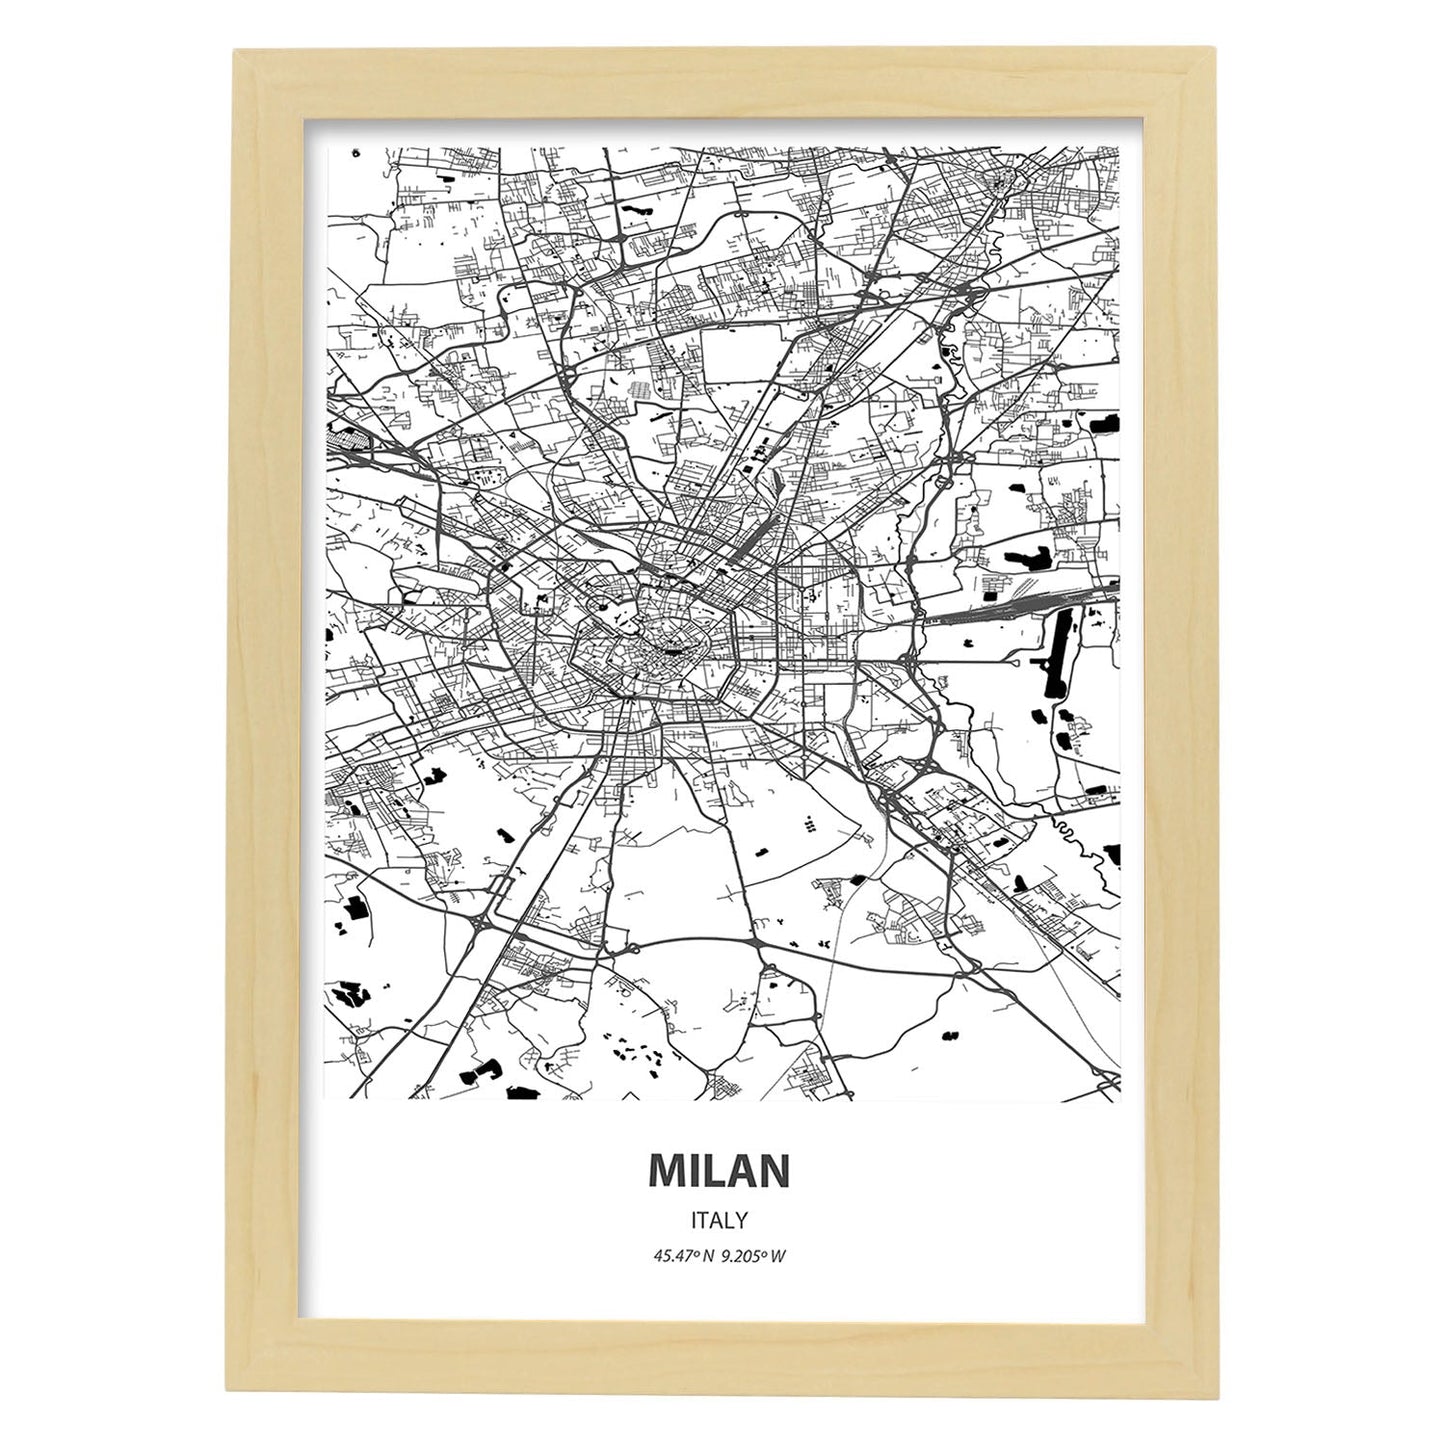 Poster con mapa de Milan - Italia. Láminas de ciudades de Italia con mares y ríos en color negro.-Artwork-Nacnic-A4-Marco Madera clara-Nacnic Estudio SL